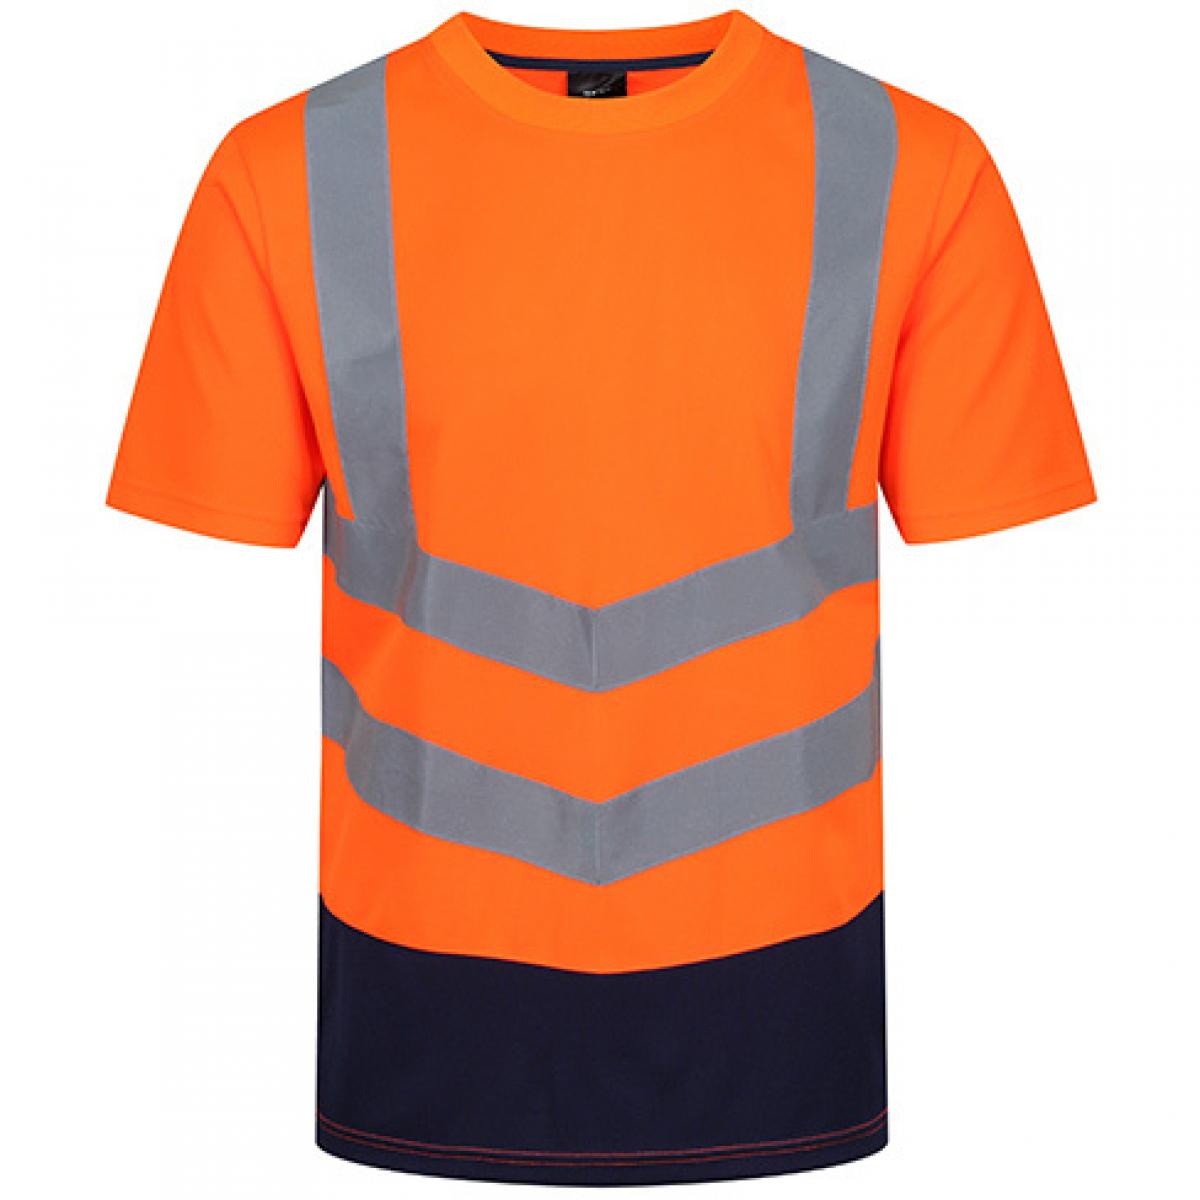 Hersteller: Regatta High Visibility Herstellernummer: TRS194 Artikelbezeichnung: Pro Hi Vis Short Sleeve T-Shirt - Sicherheits-T-Shirt Farbe: Orange/Navy